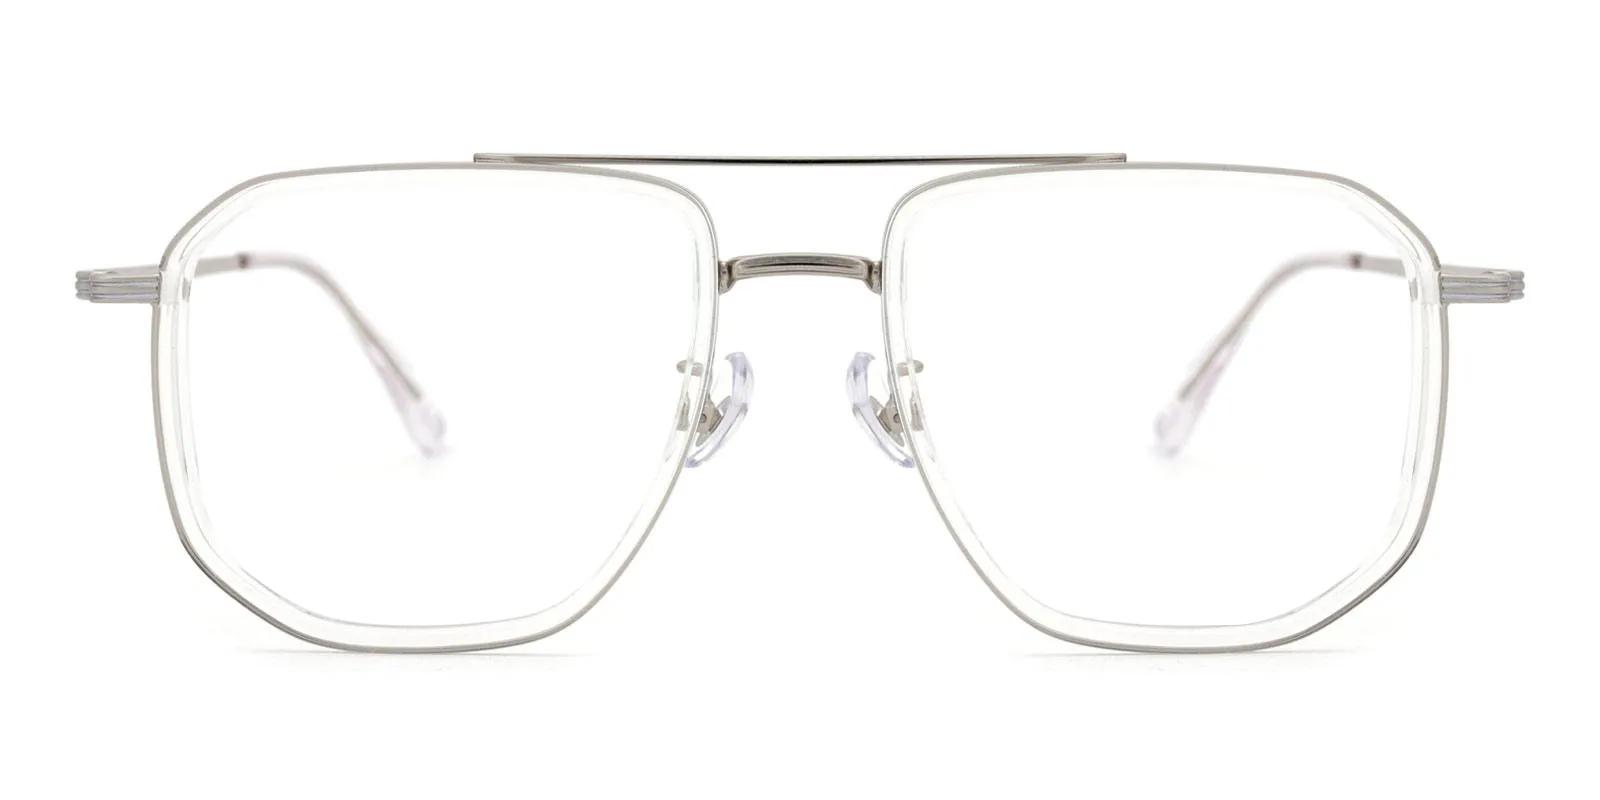 Doxoine Fclear Titanium , TR Eyeglasses , NosePads Frames from ABBE Glasses